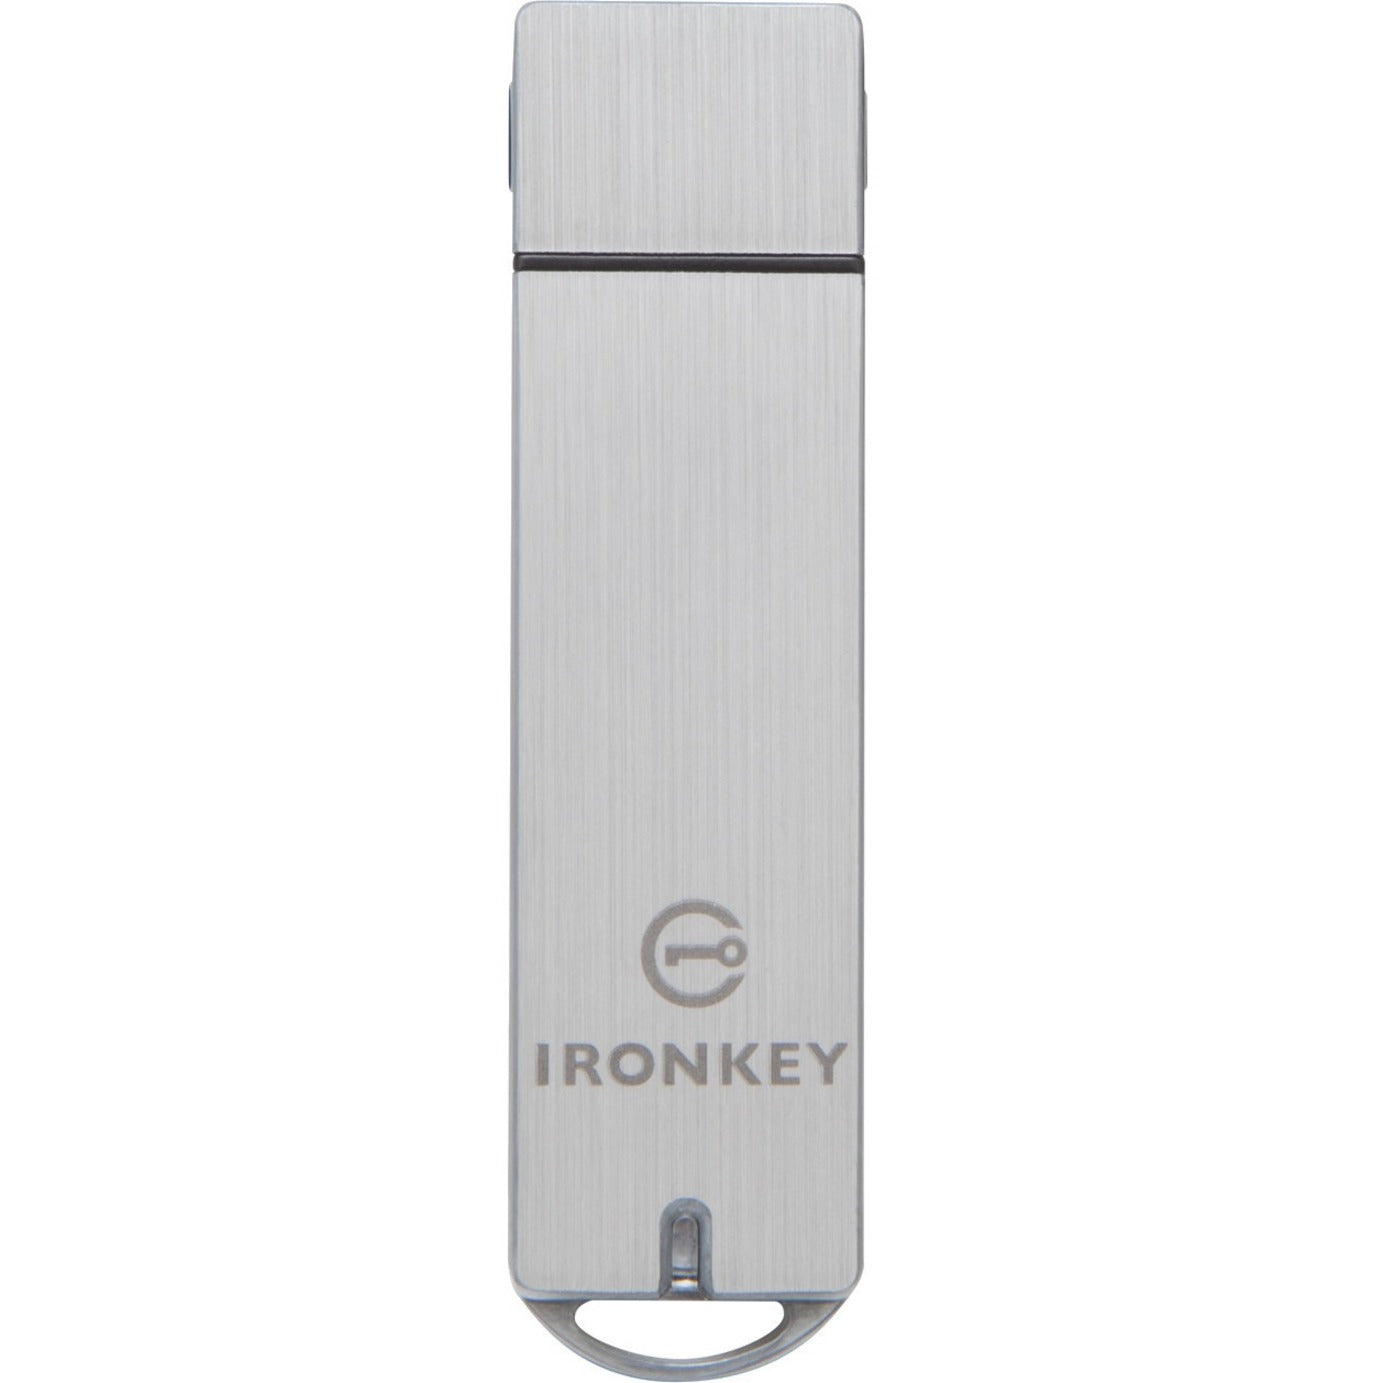 IronKey Basic S1000 Encrypted Flash Drive